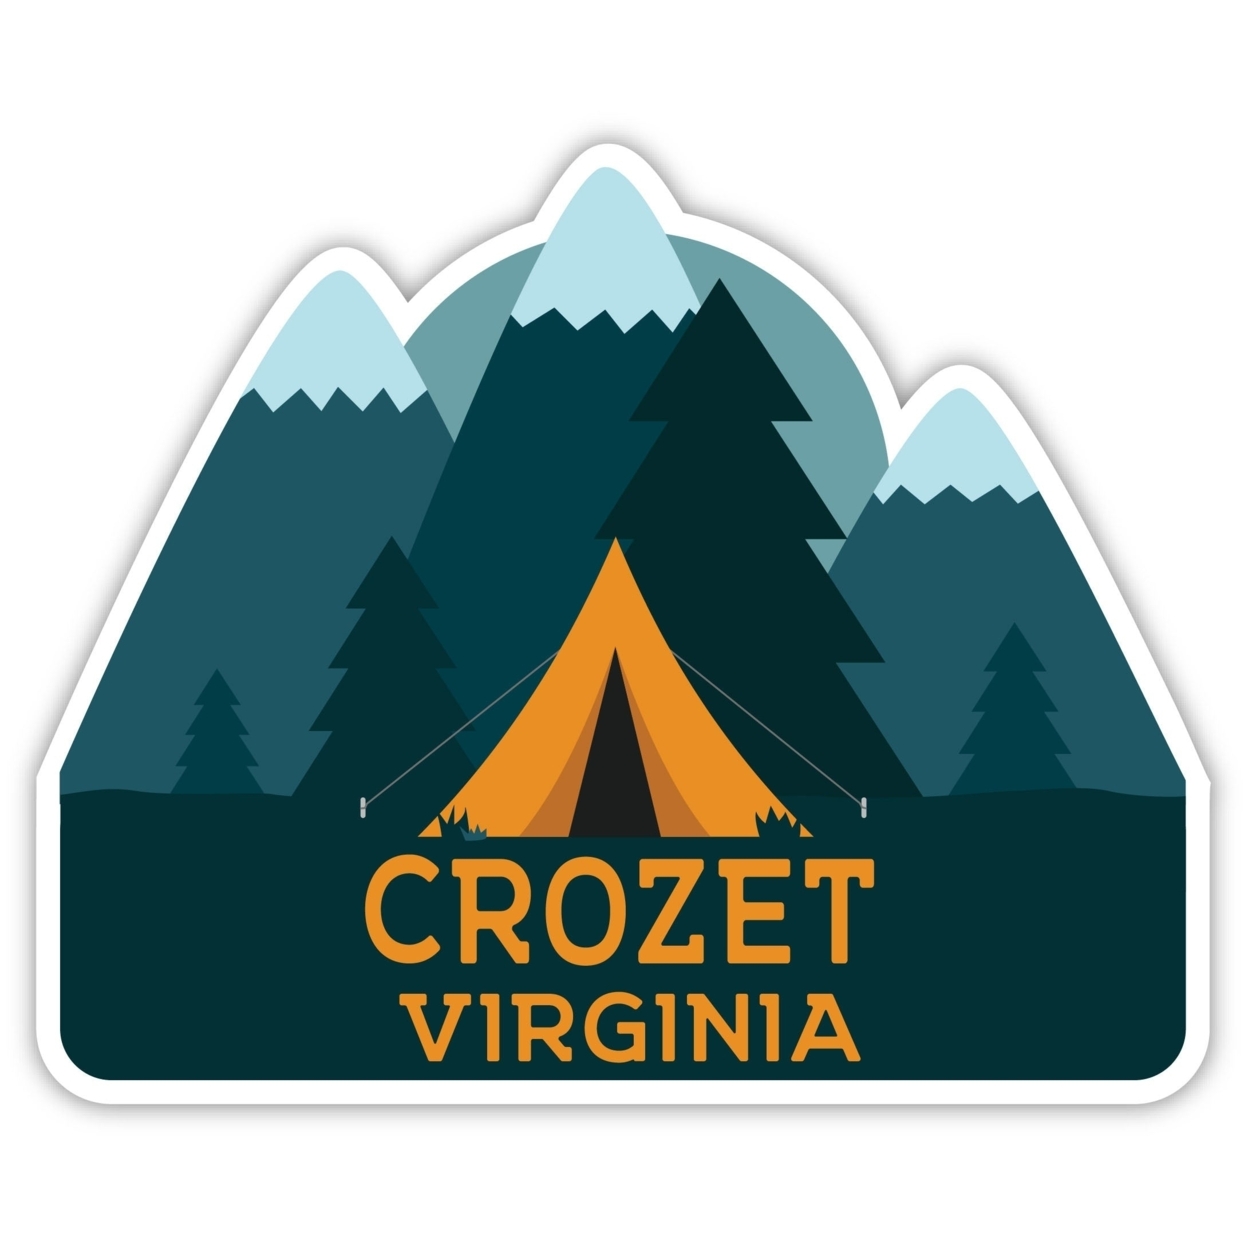 Crozet Virginia Souvenir Decorative Stickers (Choose Theme And Size) - Single Unit, 12-Inch, Tent